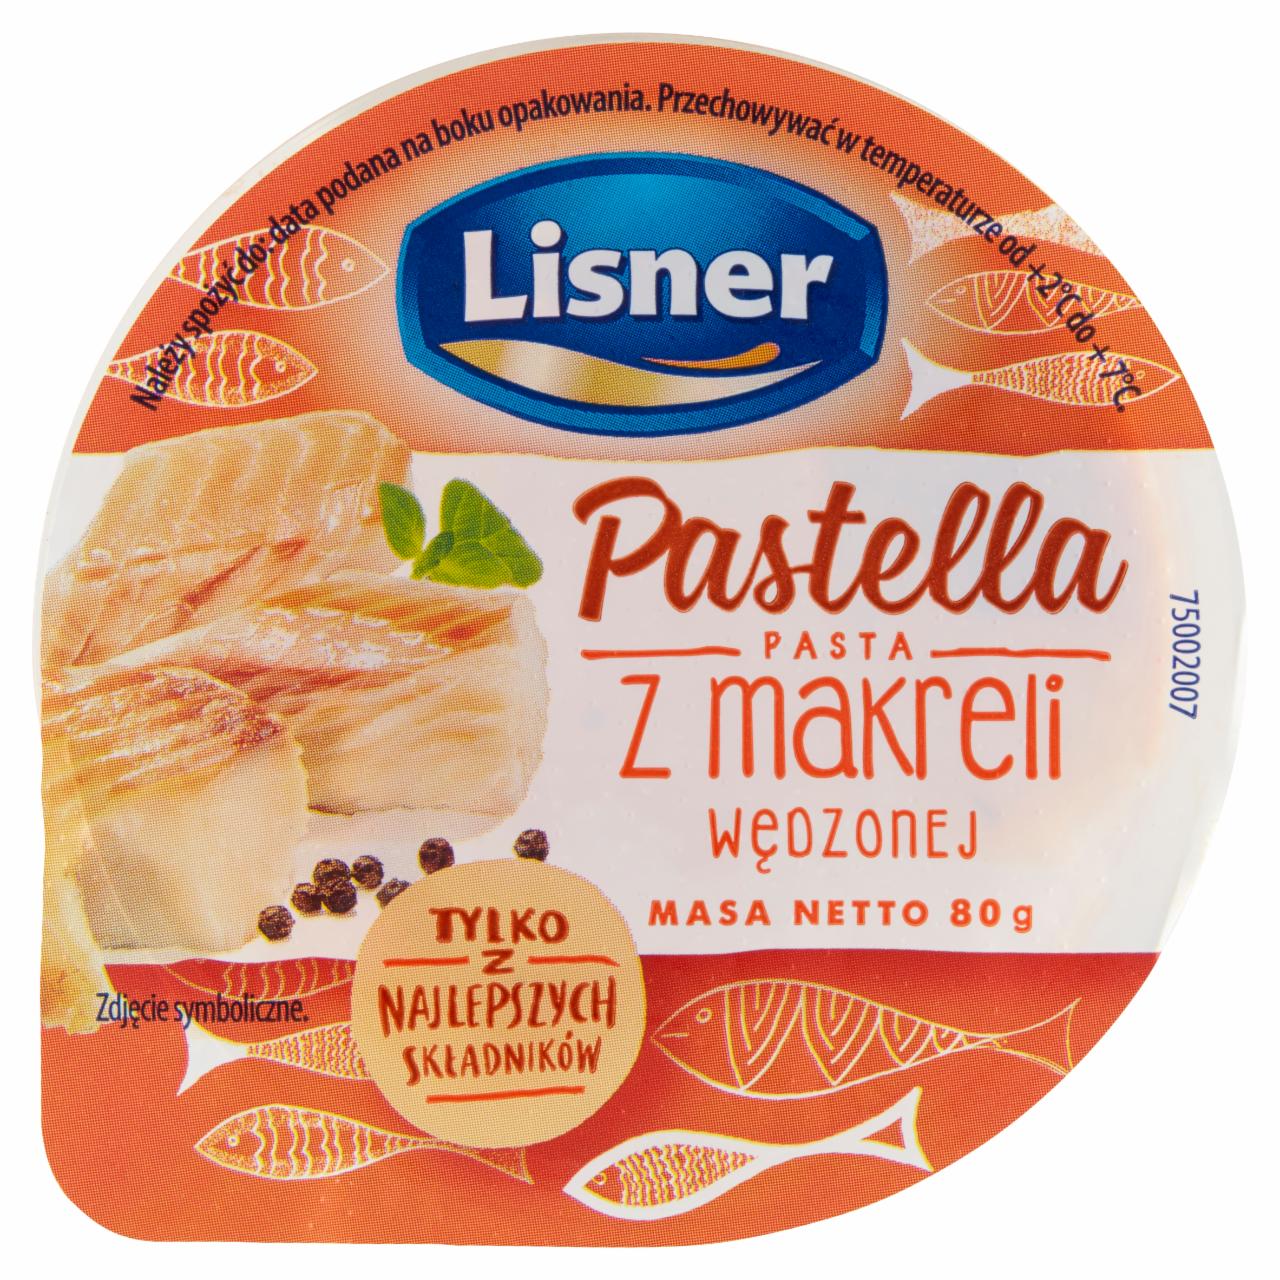 Zdjęcia - Pastella Pasta z makreli wędzonej 80 g Lisner